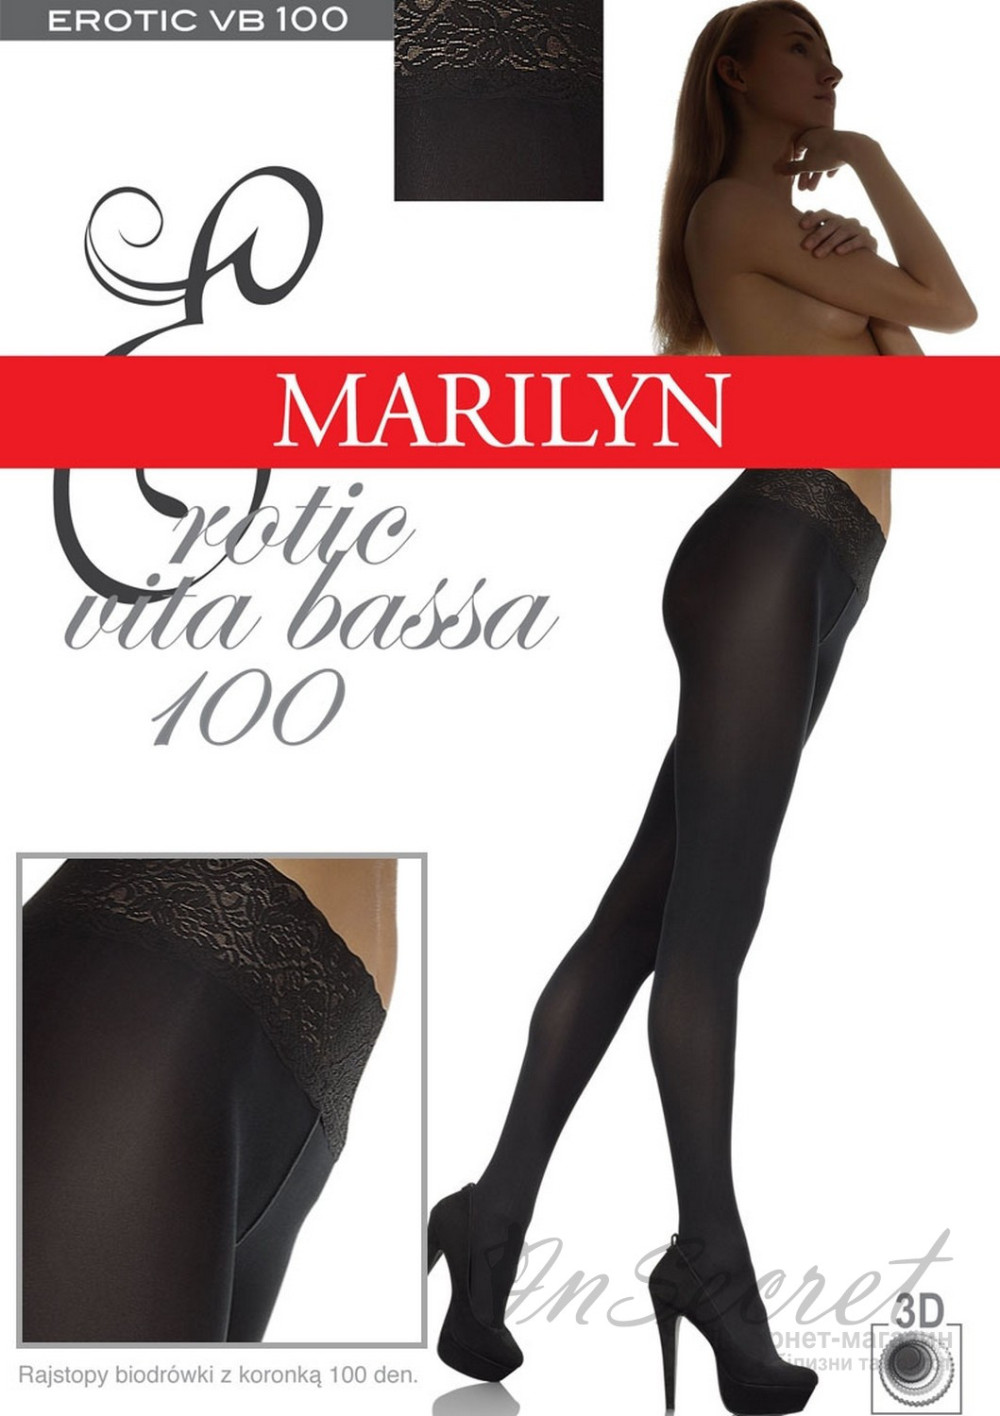 Колготки с кружевным поясом Marilyn Erotic 100 den VB